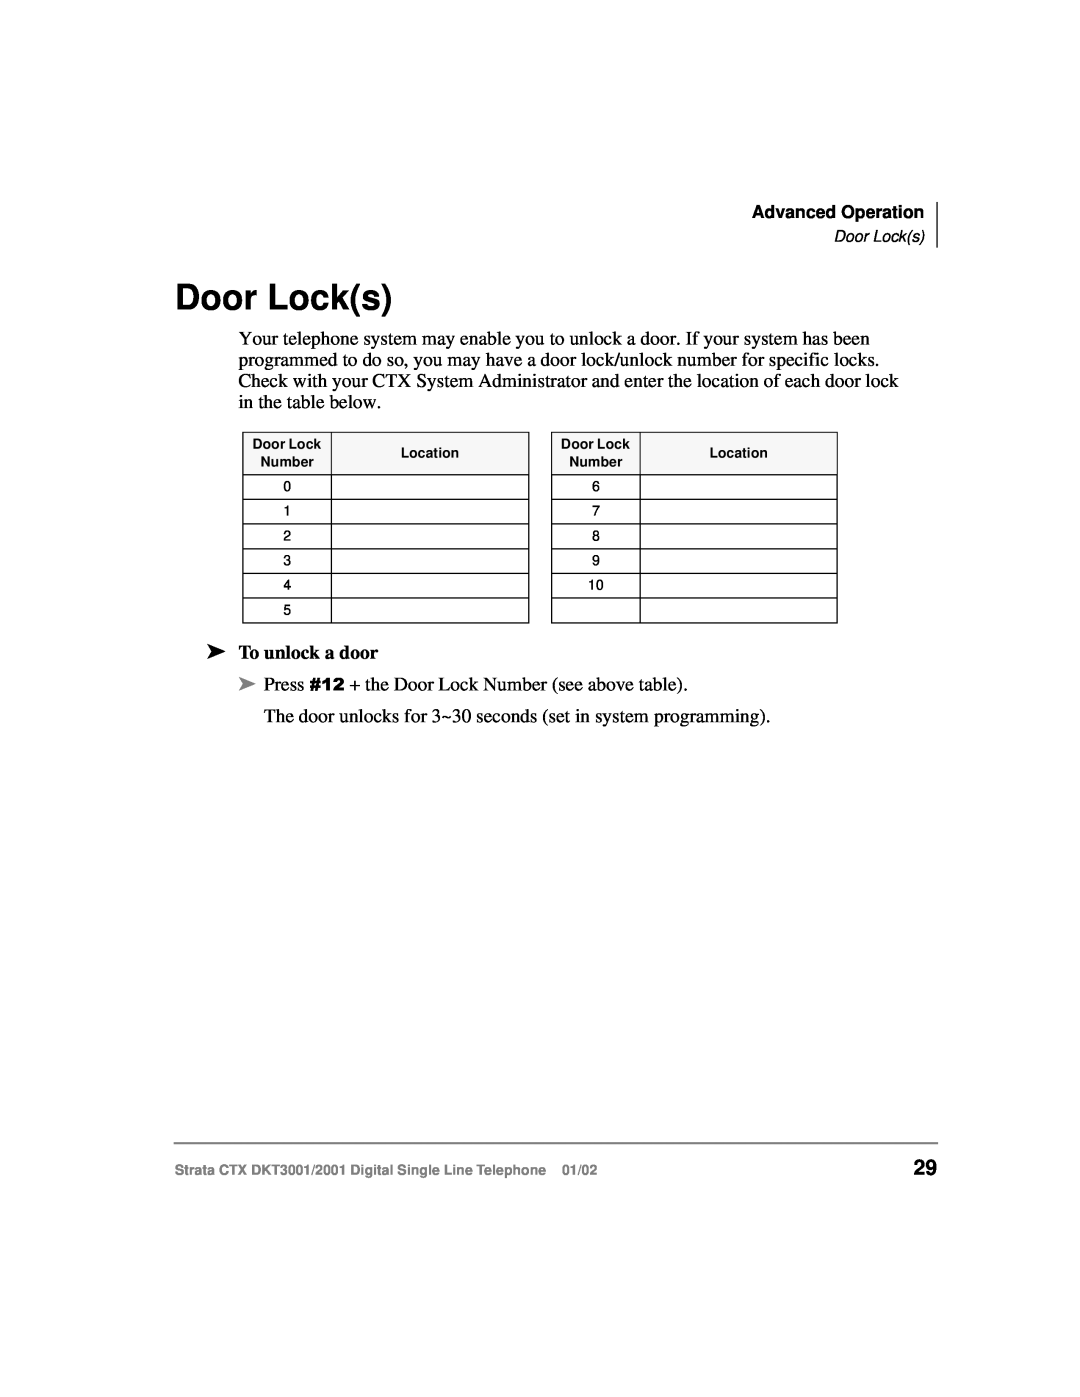 Toshiba 2001, DXT3001 manual Door Locks, To unlock a door 